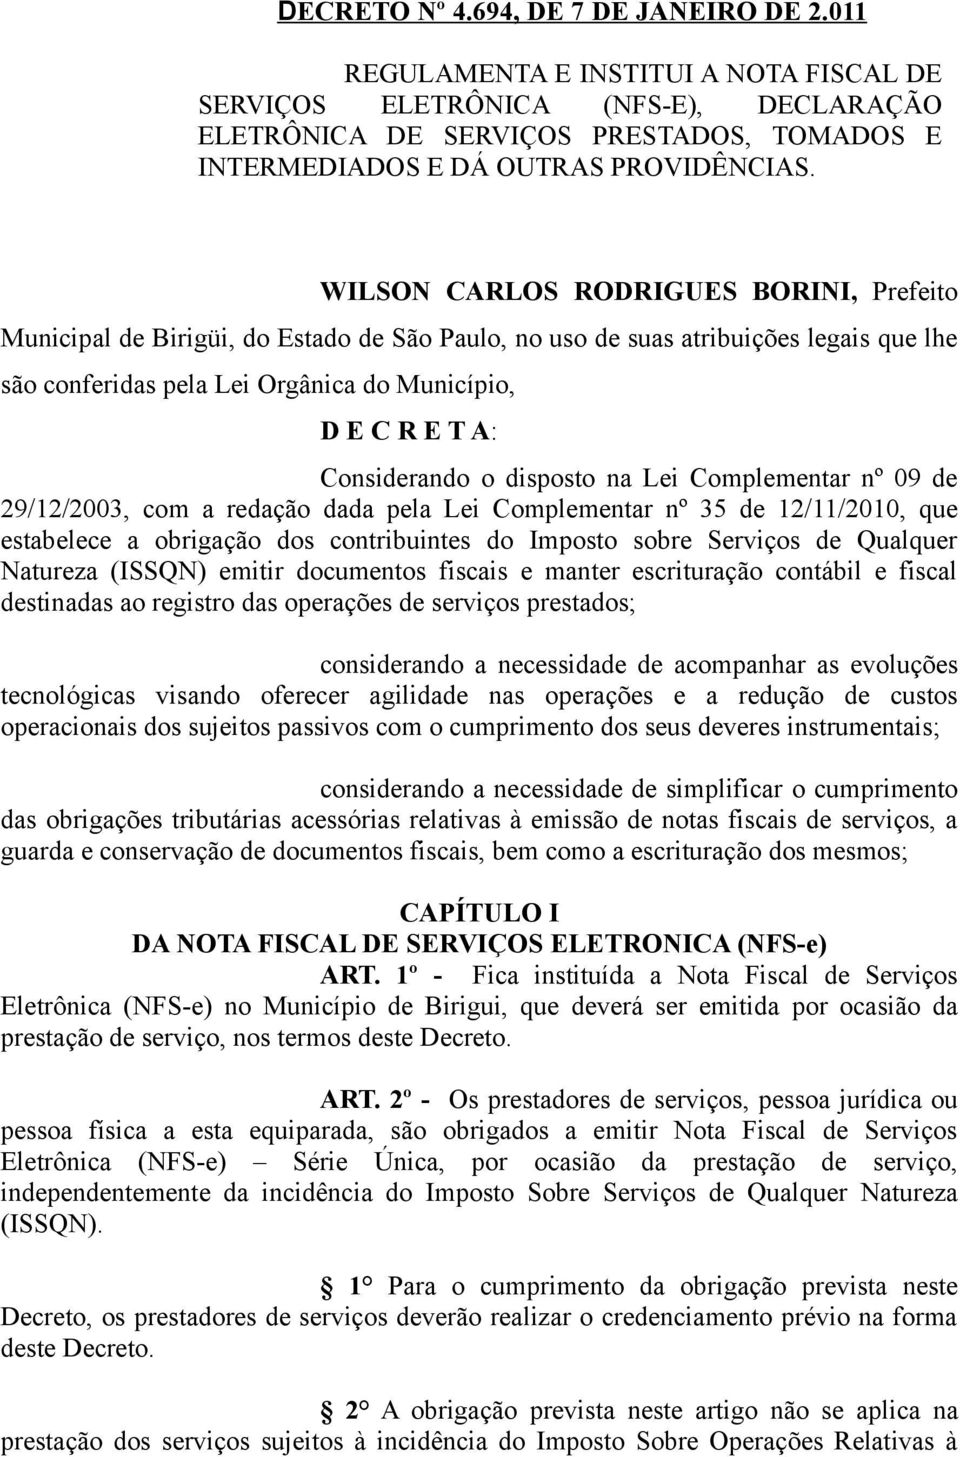 WILSON CARLOS RODRIGUES BORINI, Prefeito Municipal de Birigüi, do Estado de São Paulo, no uso de suas atribuições legais que lhe são conferidas pela Lei Orgânica do Município, D E C R E T A: